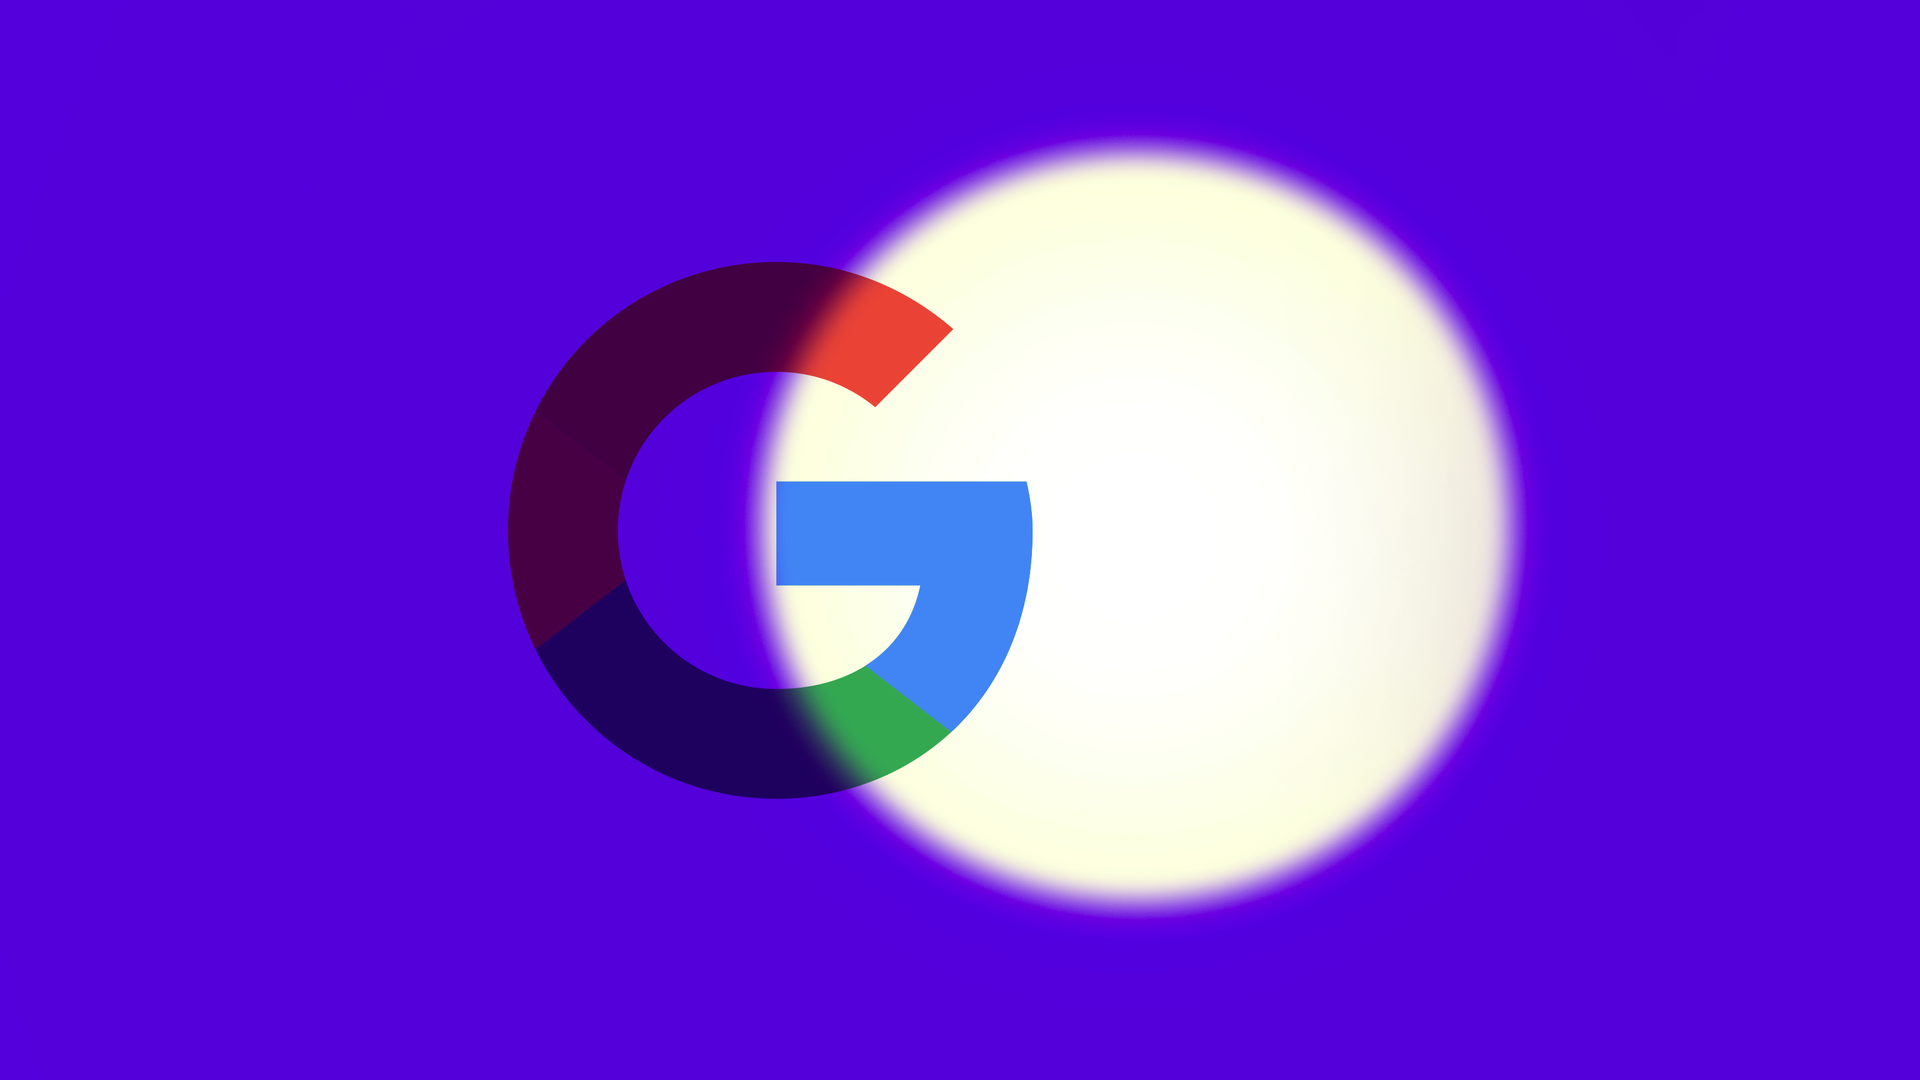 Illustration of Google logo in the spotlight